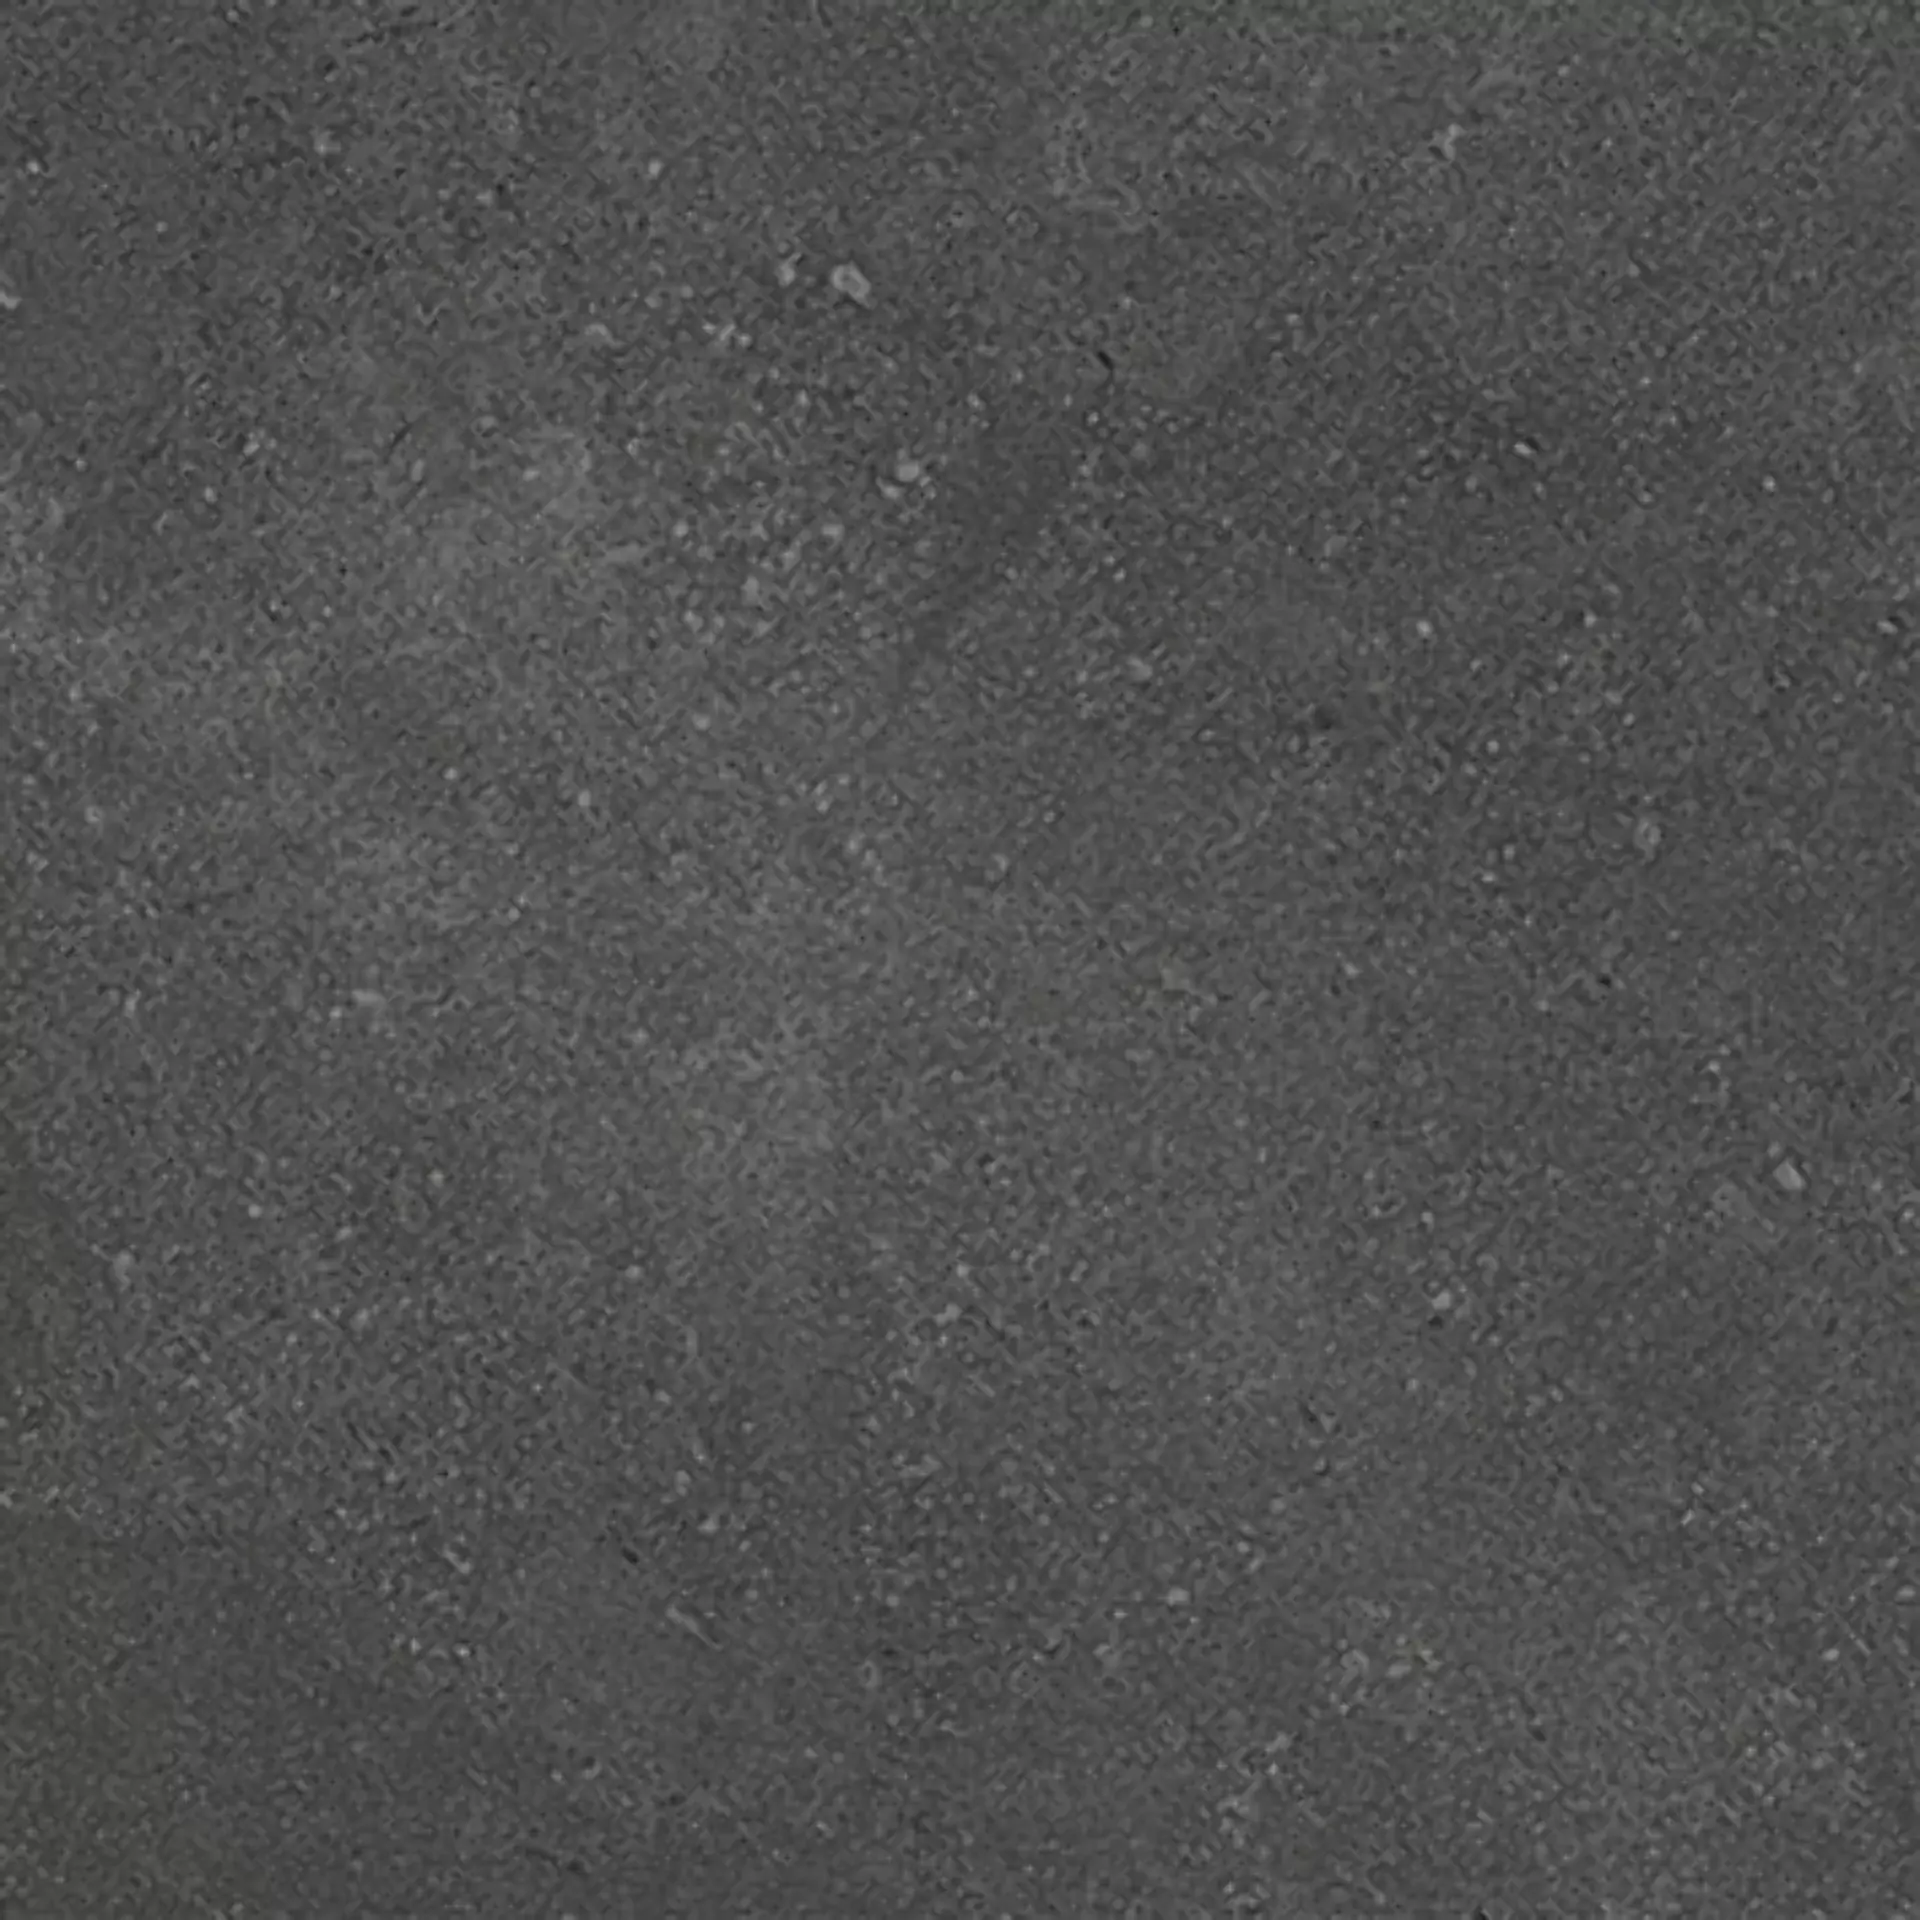 Wandfliese,Bodenfliese Villeroy & Boch Hudson Magma Matt Magma 2575-SD8M matt 30x30cm rektifiziert 10mm